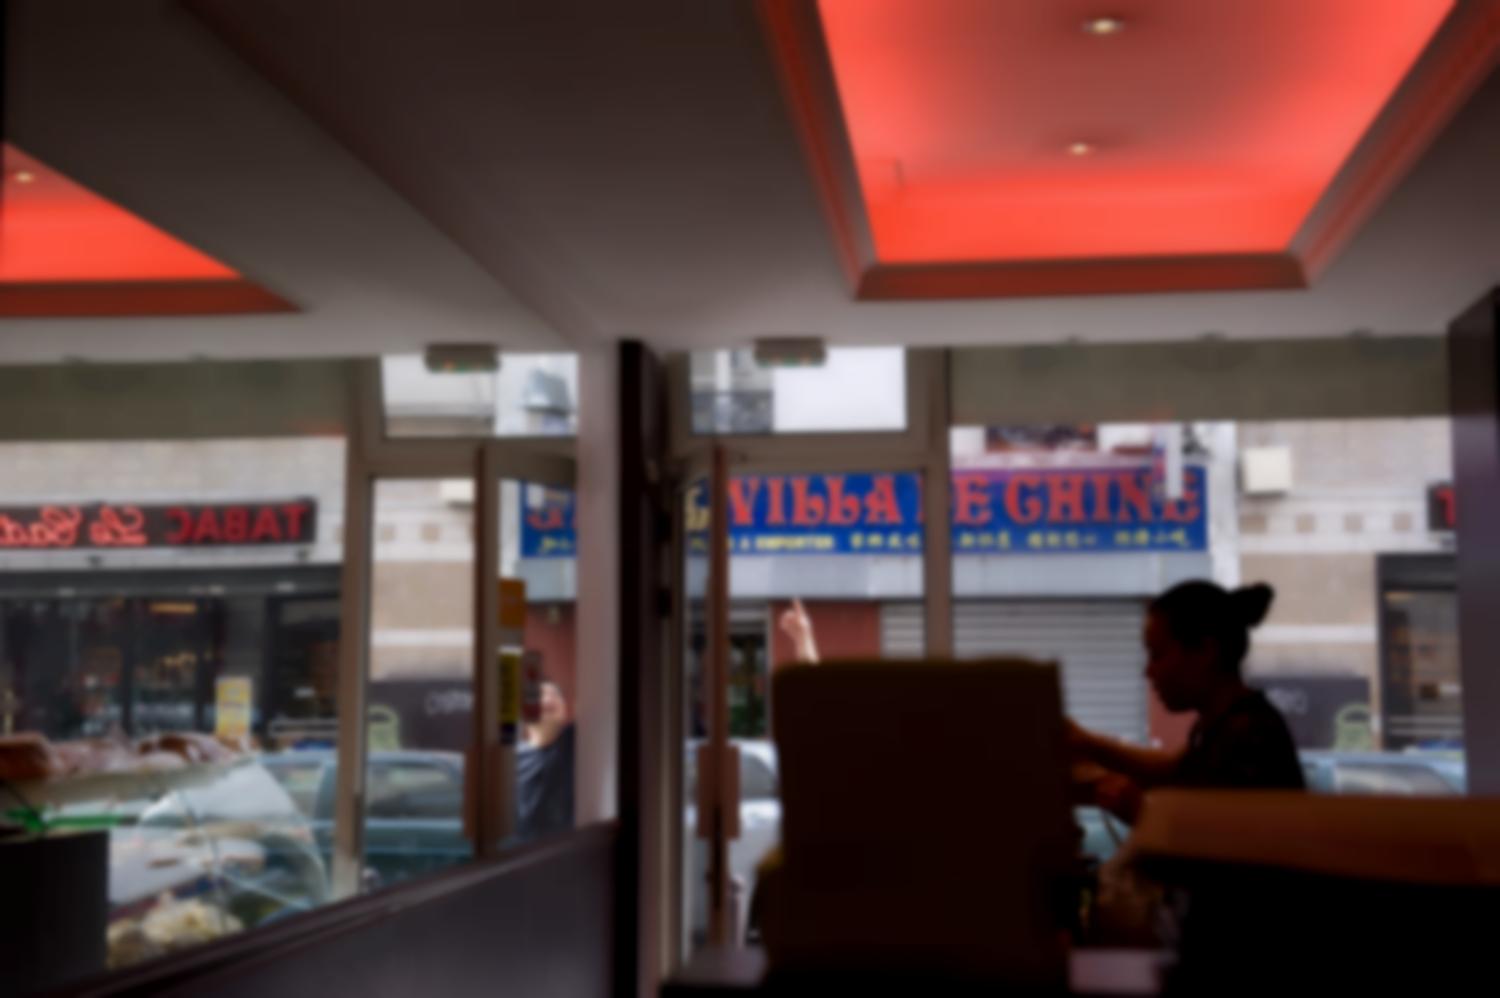 Cantine chinoise rue de Joinville, la serveuse en contrejour, un miroir qui reflète la vitrine. Dans la rue, un homme montre quelque chose en l'air, et l'enseigne d'un autre restaurant, la Villa de Chine. Paris, août 2011.